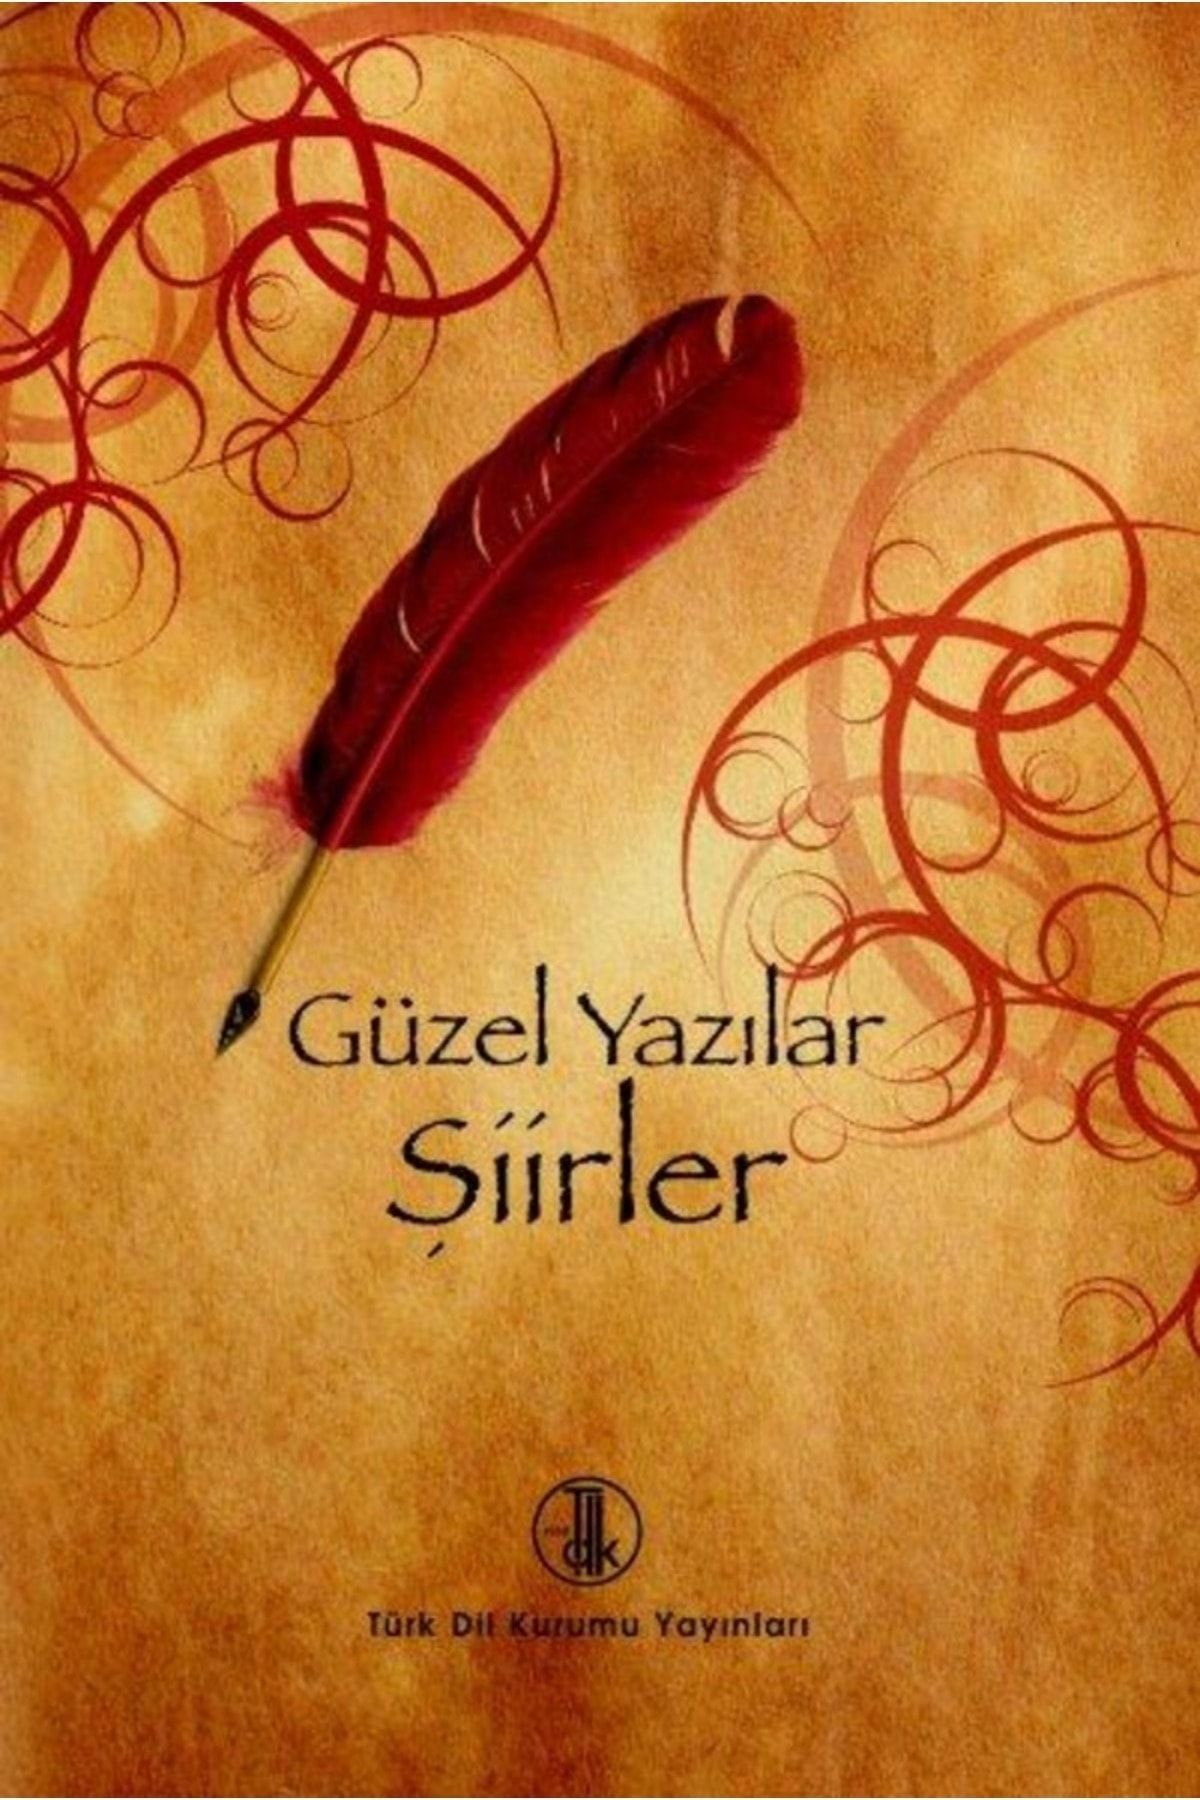 Türk Dil Kurumu Yayınları Güzel Yazılar Şiirler, 2018 Türk Dil Kurumu Yayınları